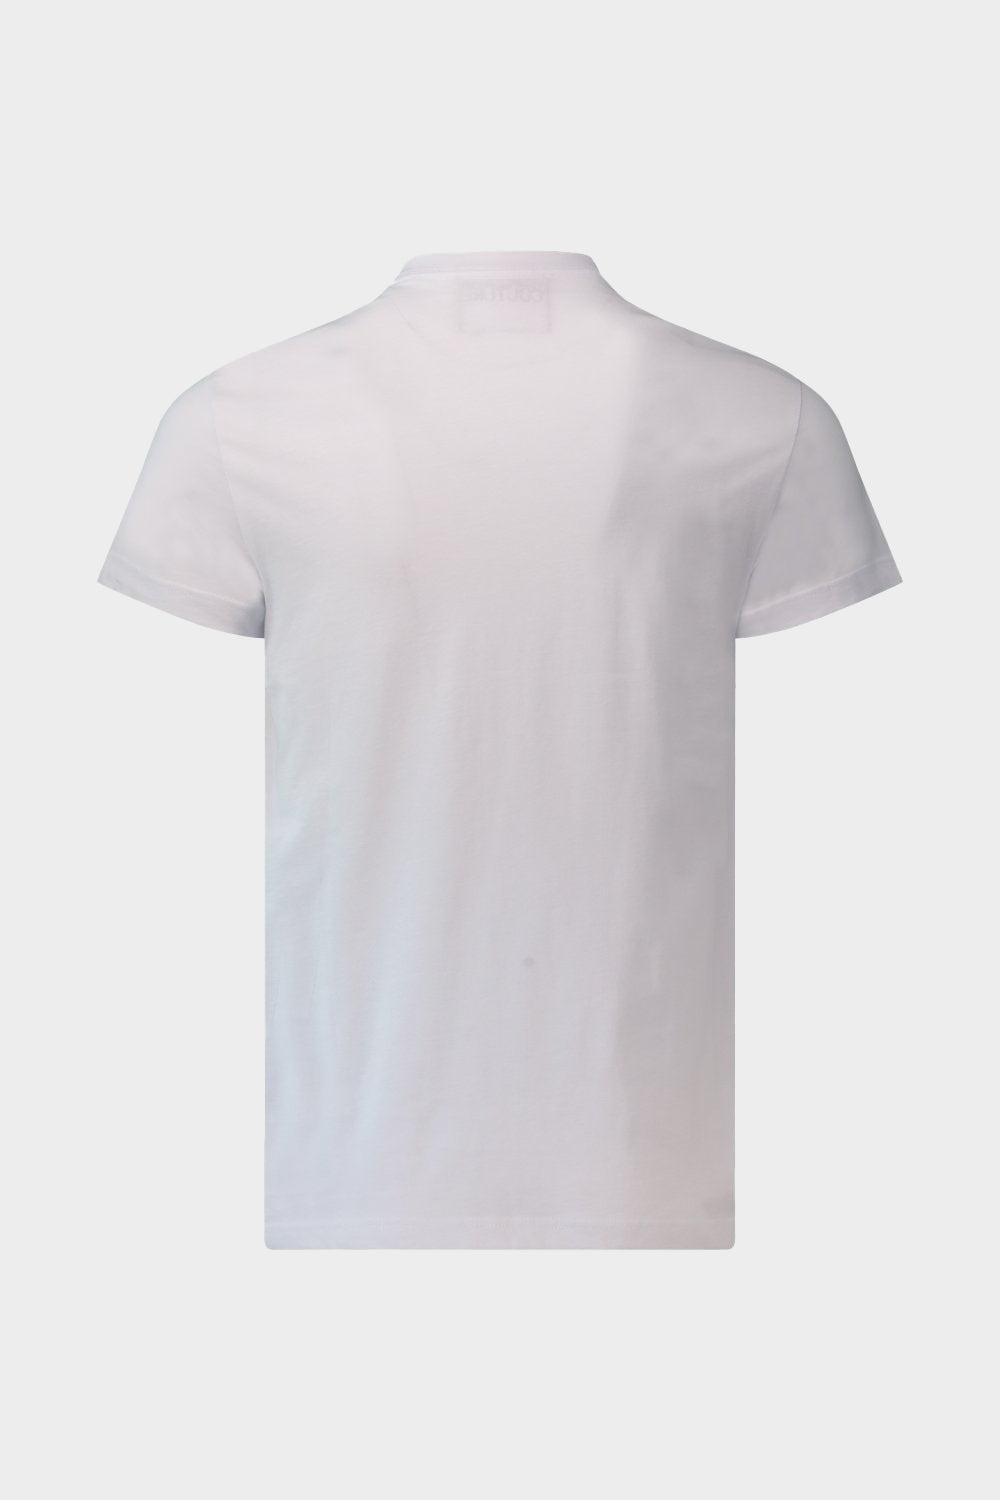 חולצת טי שירט לגברים לוגו פסים VERSACE Vendome online | ונדום .